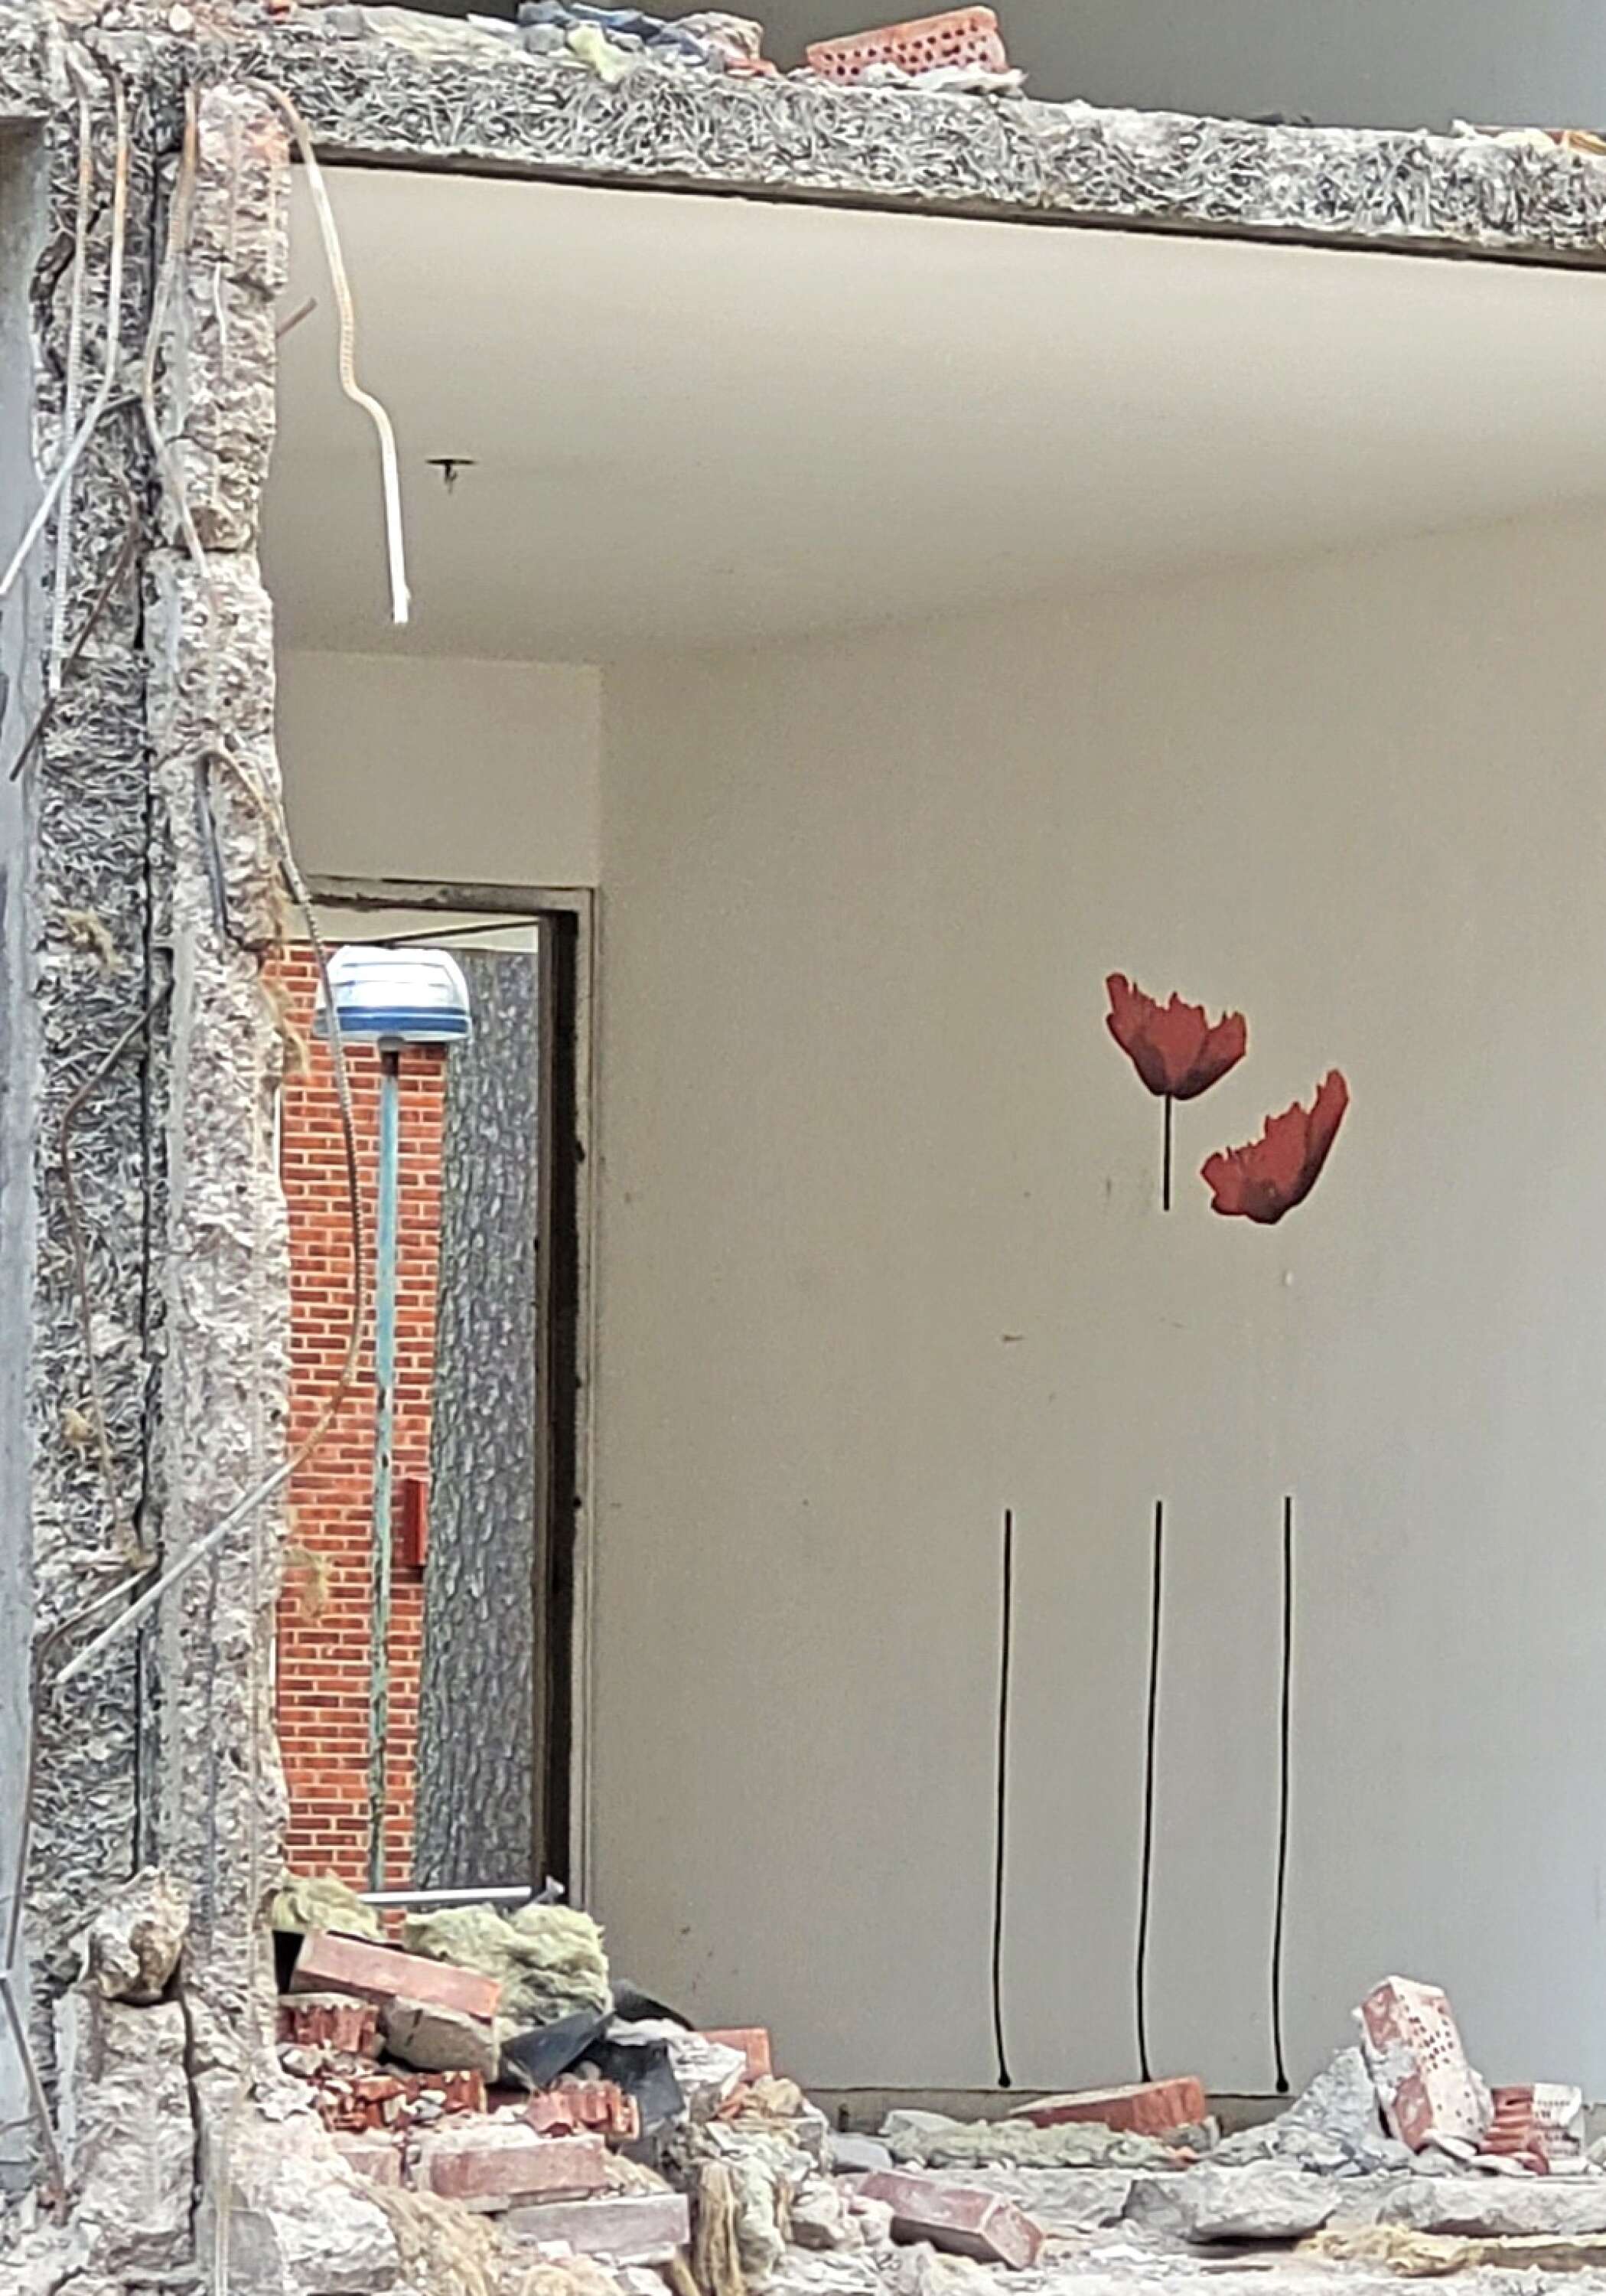 De flesta väggarna i huset är enfärgade i olika kulörer. Ett undantag finns. I en lägenhet finns en väggmålning med vallmo, som en gång fick pryda det rummet.